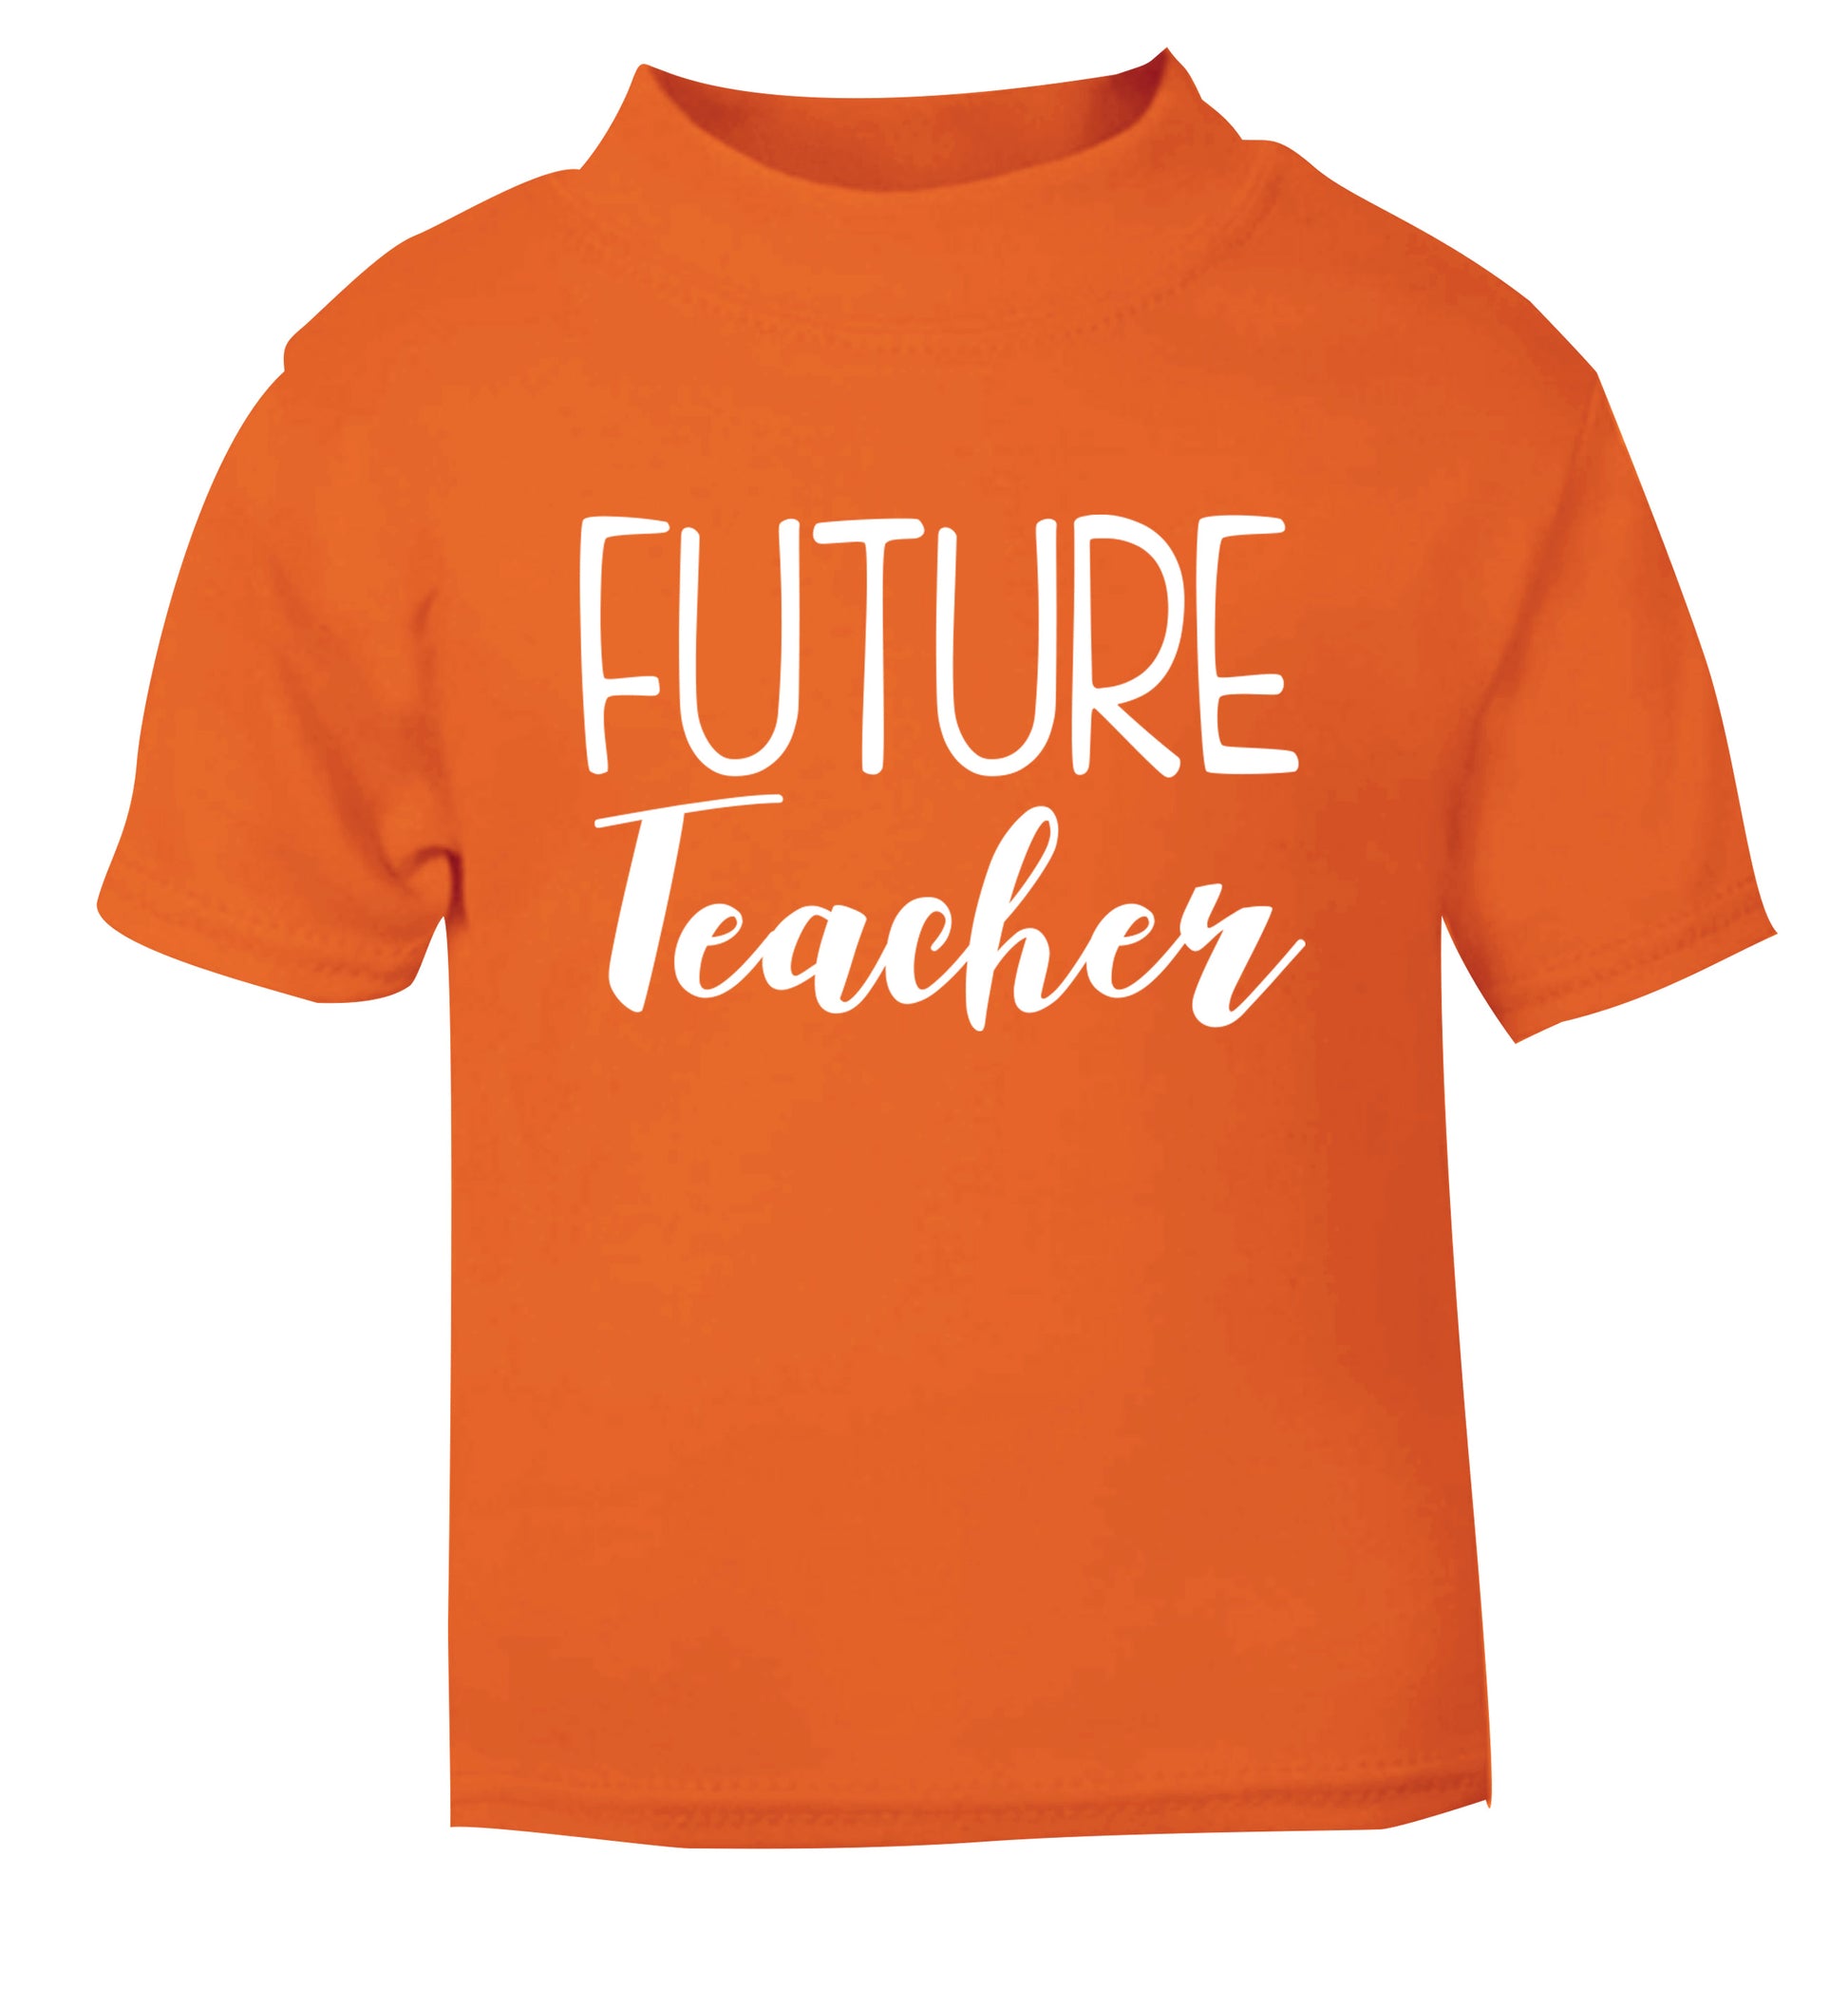 Future teacher orange Baby Toddler Tshirt 2 Years